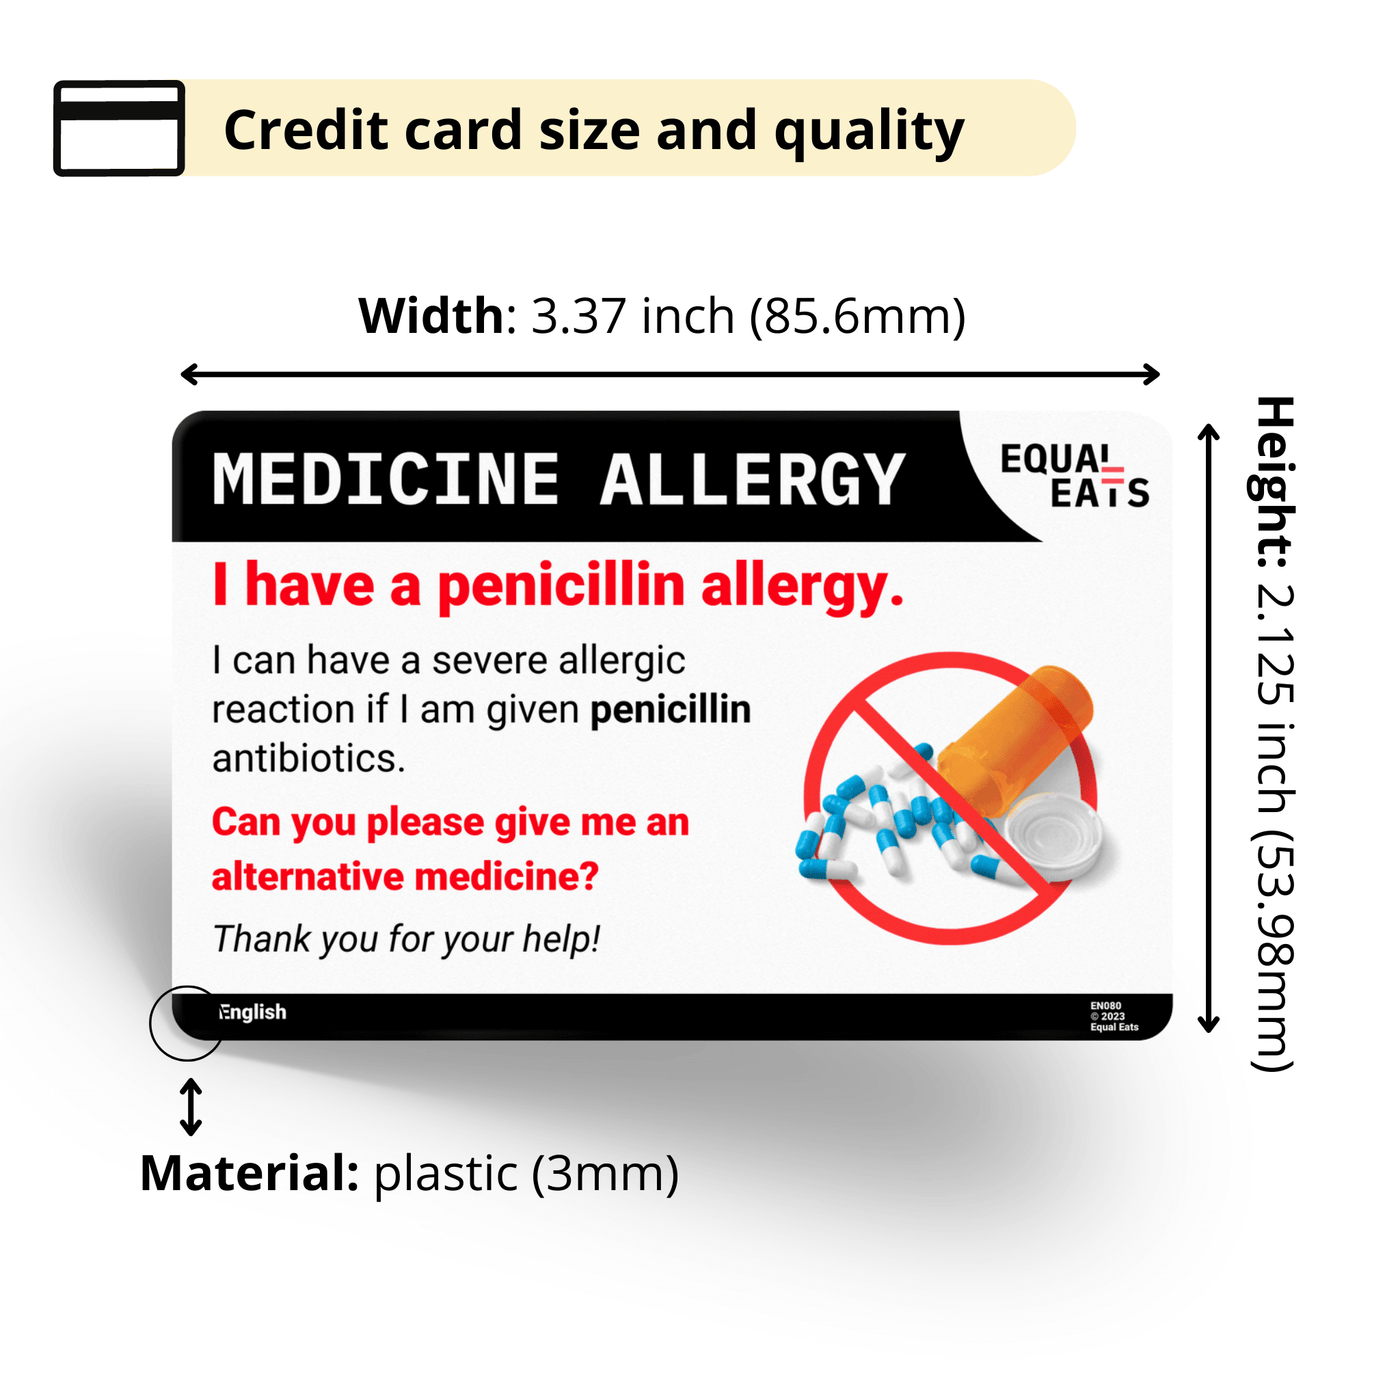 Portuguese (Brazil) Penicillin Allergy Card